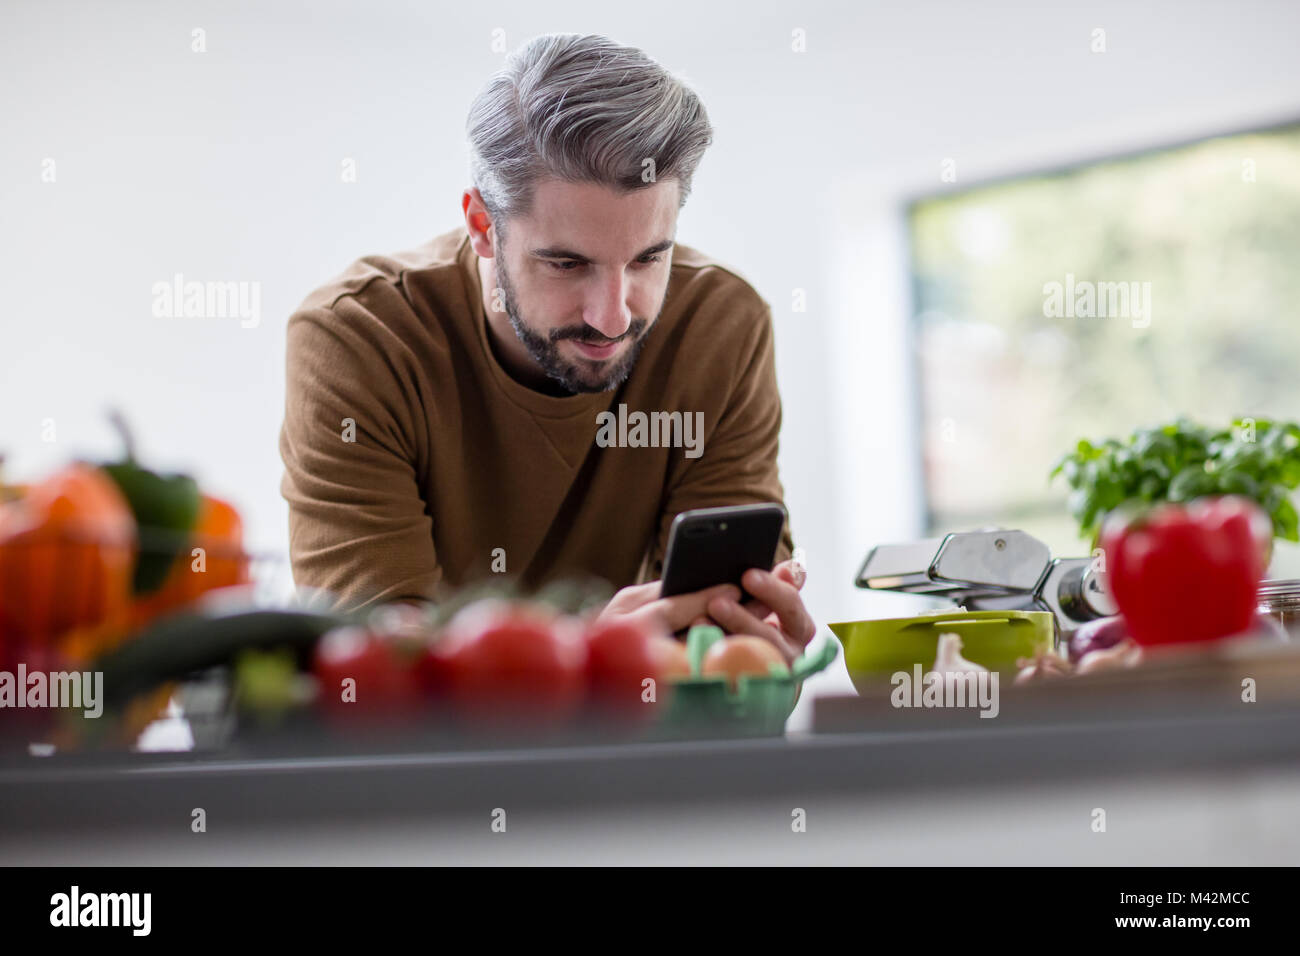 La recherche de mâles adultes fiche sur smartphone dans la cuisine Banque D'Images